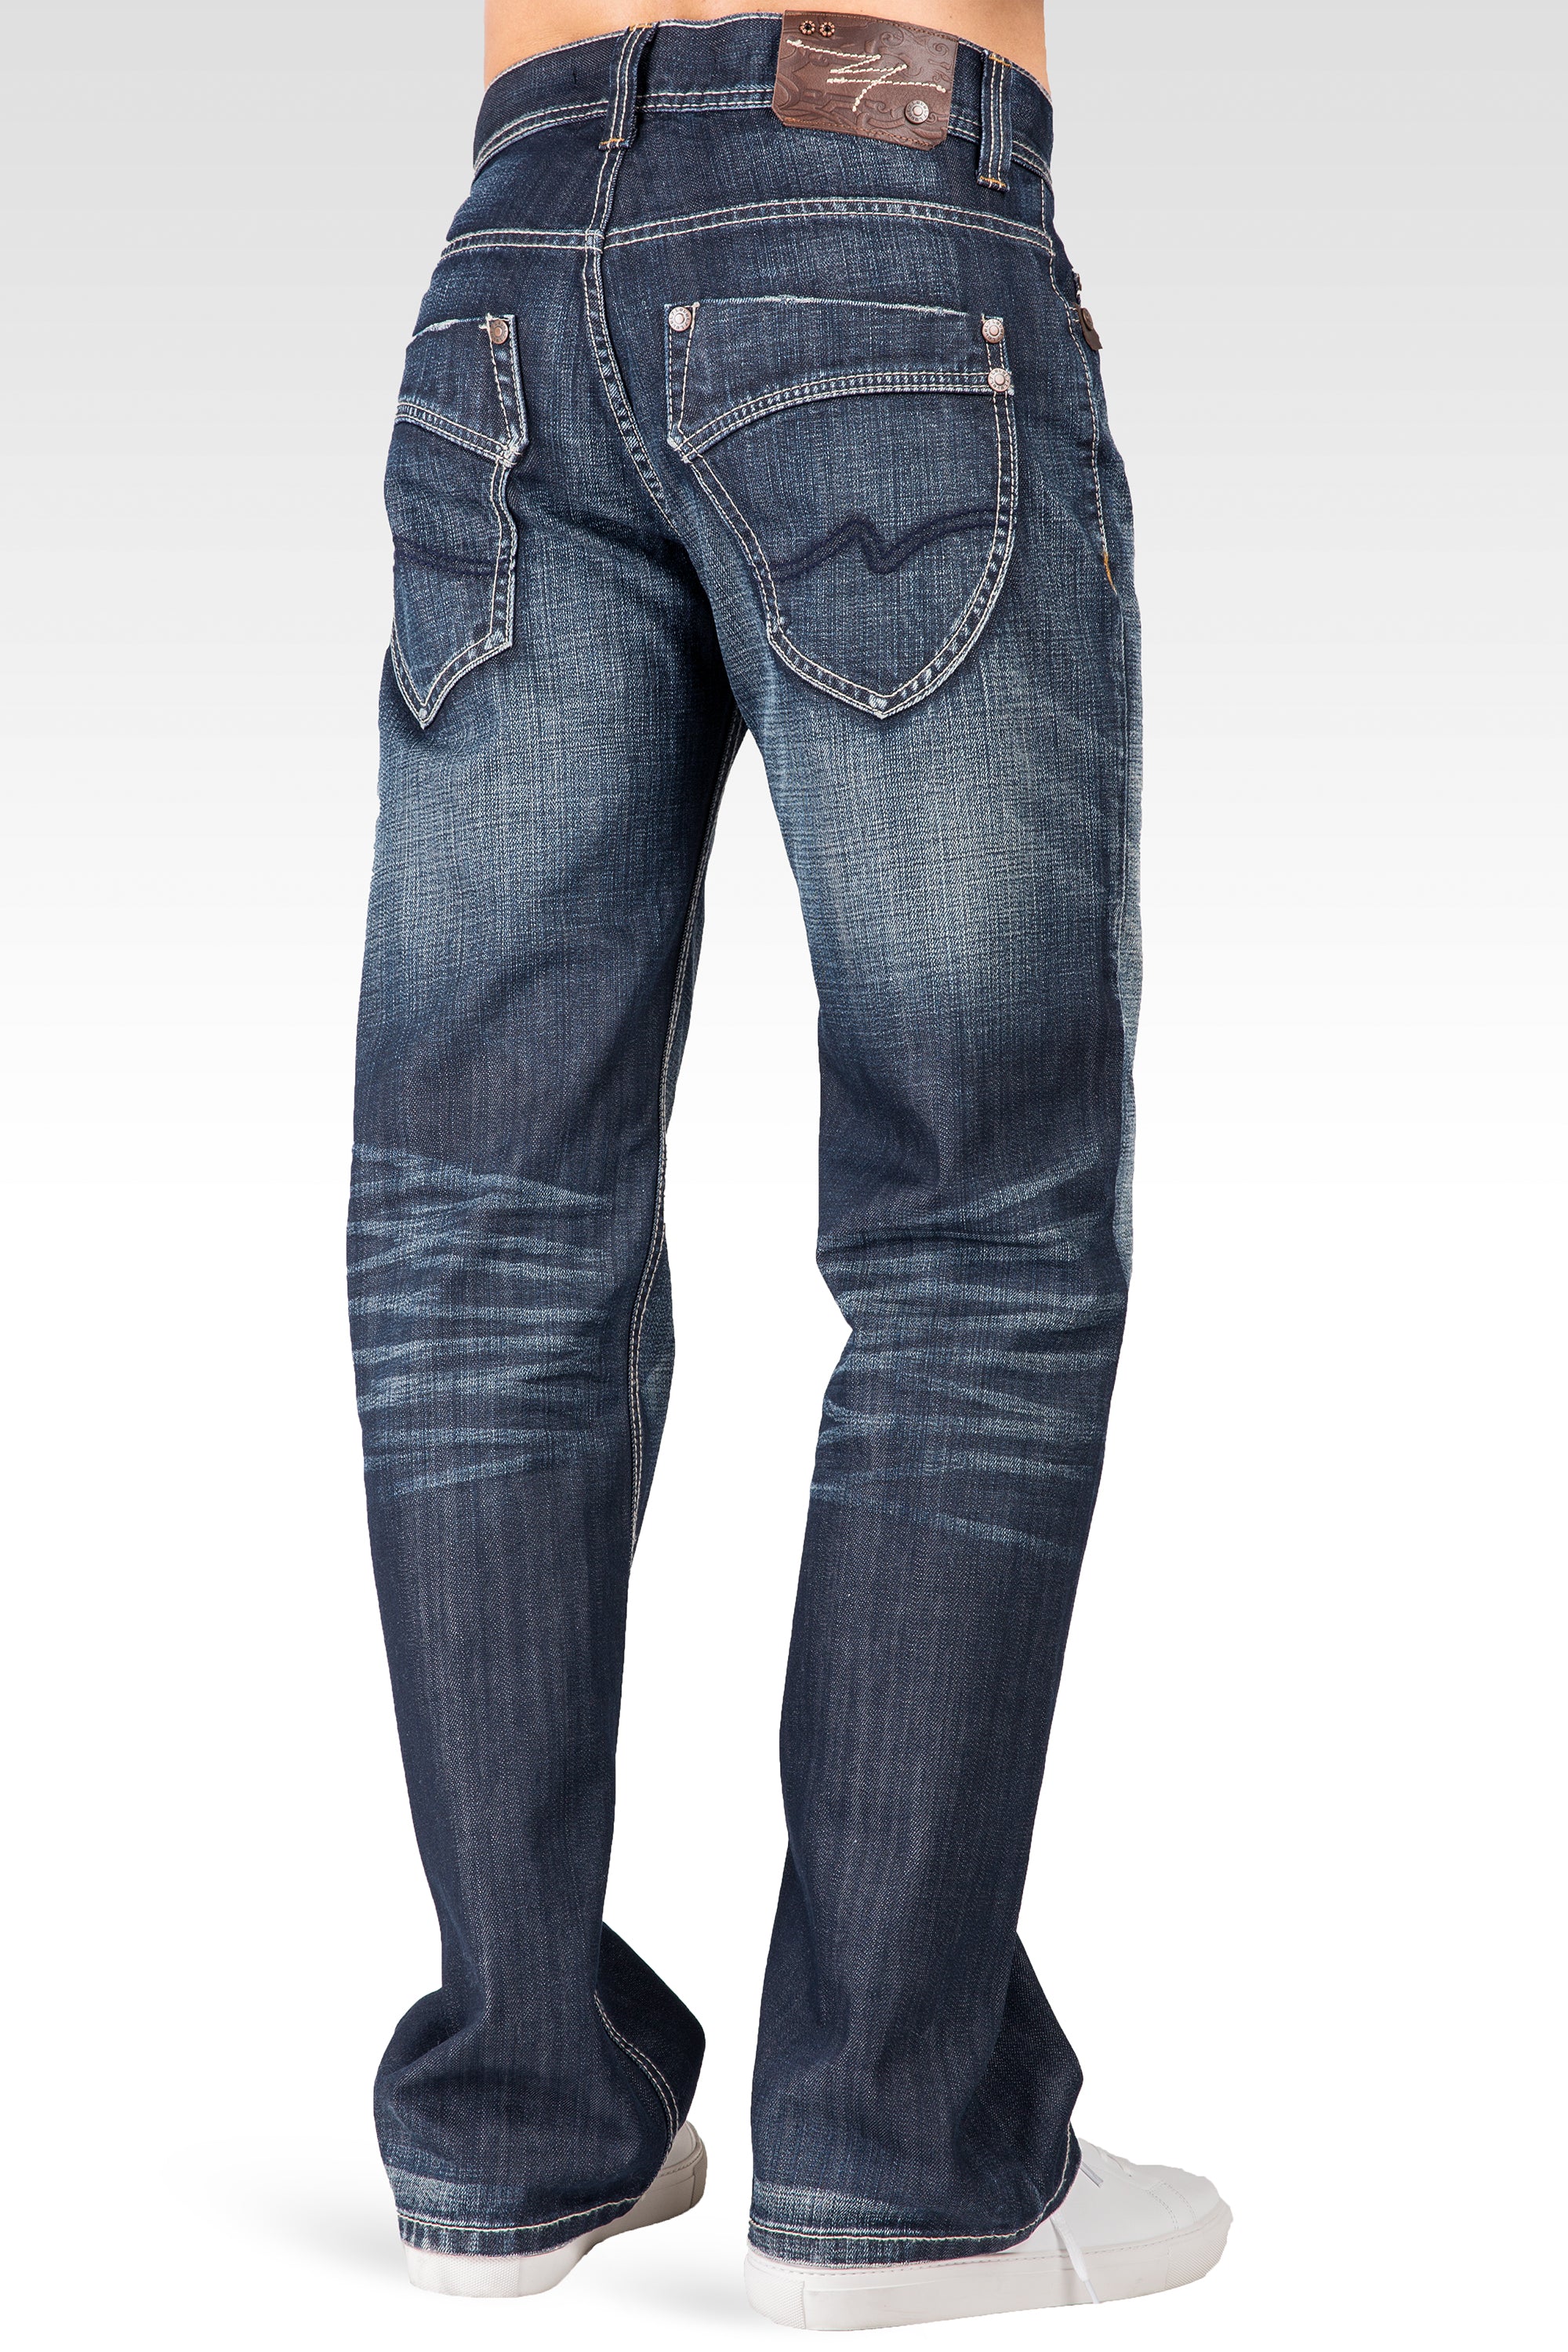 Level 7 Men's Relaxed Bootcut Whisker Faded Black 5 Pocket Jeans Premium  Denim – Level 7 Jeans